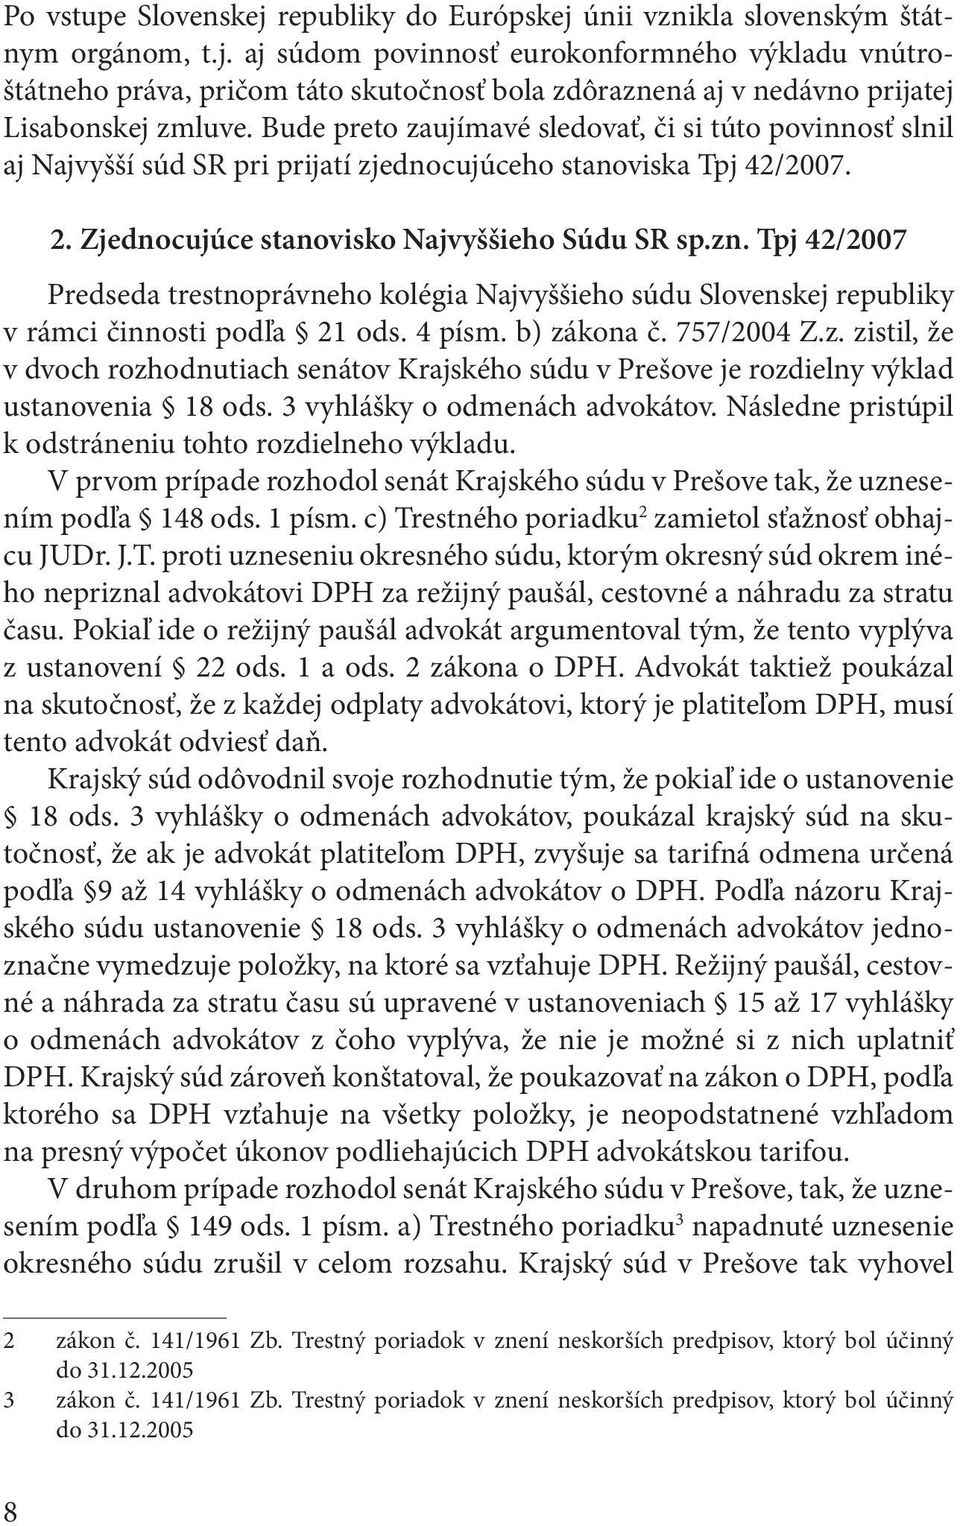 Tpj 42/2007 Predseda trestnoprávneho kolégia Najvyššieho súdu Slovenskej republiky v rámci činnosti podľa 21 ods. 4 písm. b) zá